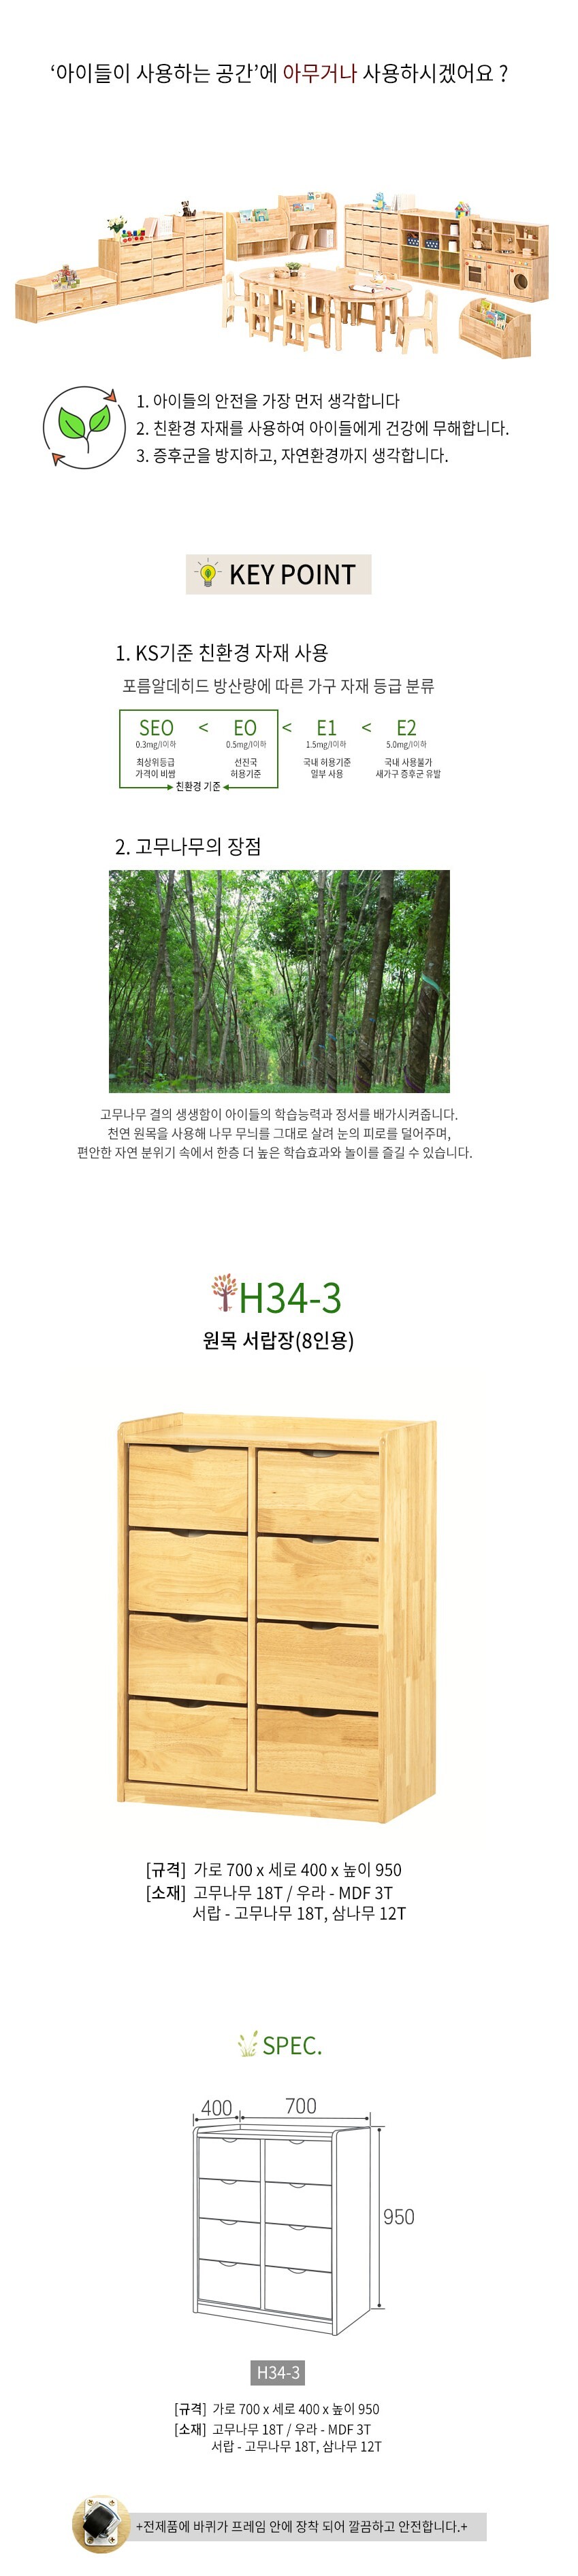 어린이 원목 서랍장(8인용) H34-3 